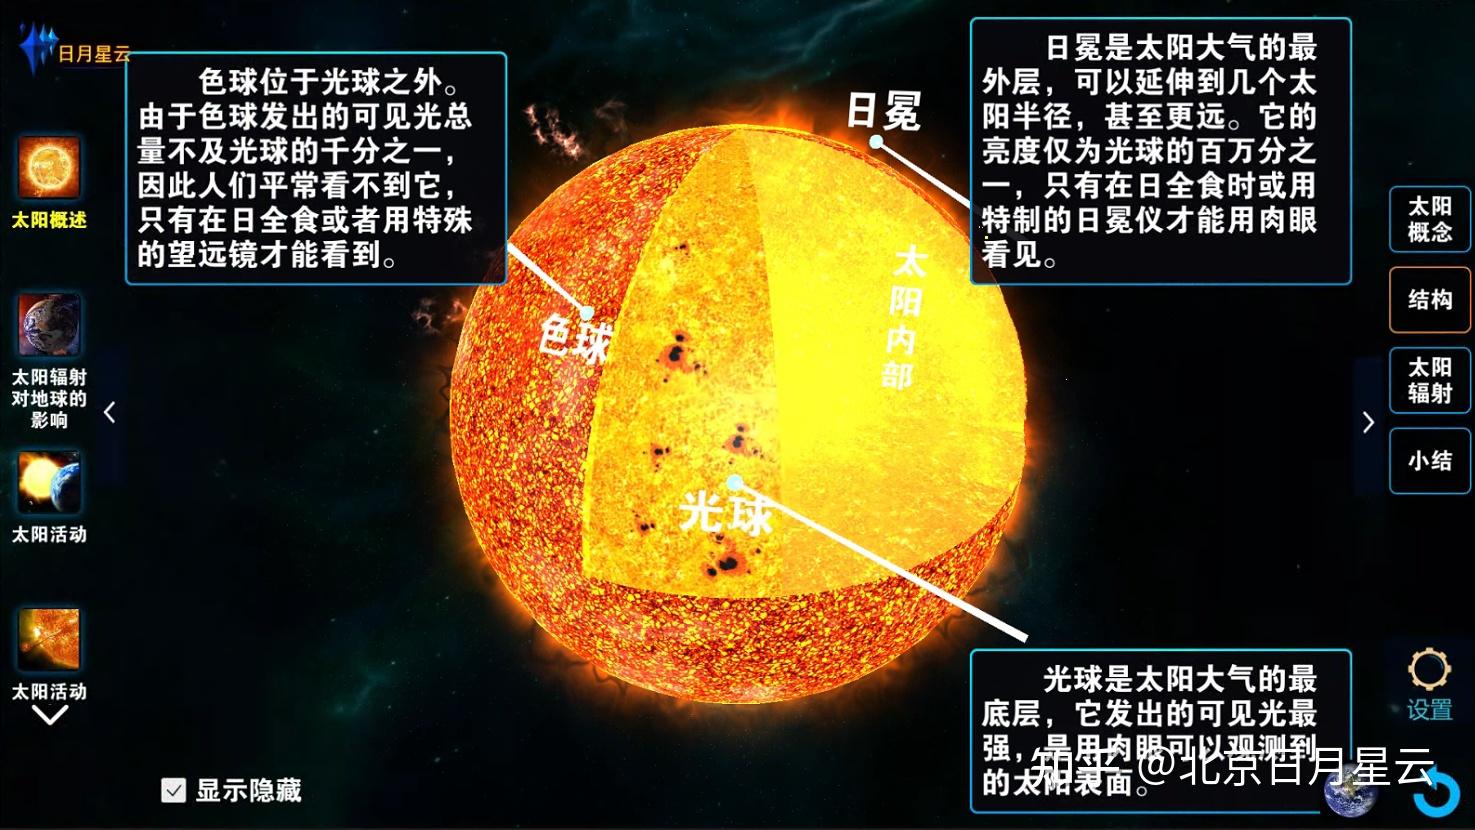 太阳中心的压强和温度 - 科学空间|Scientific Spaces